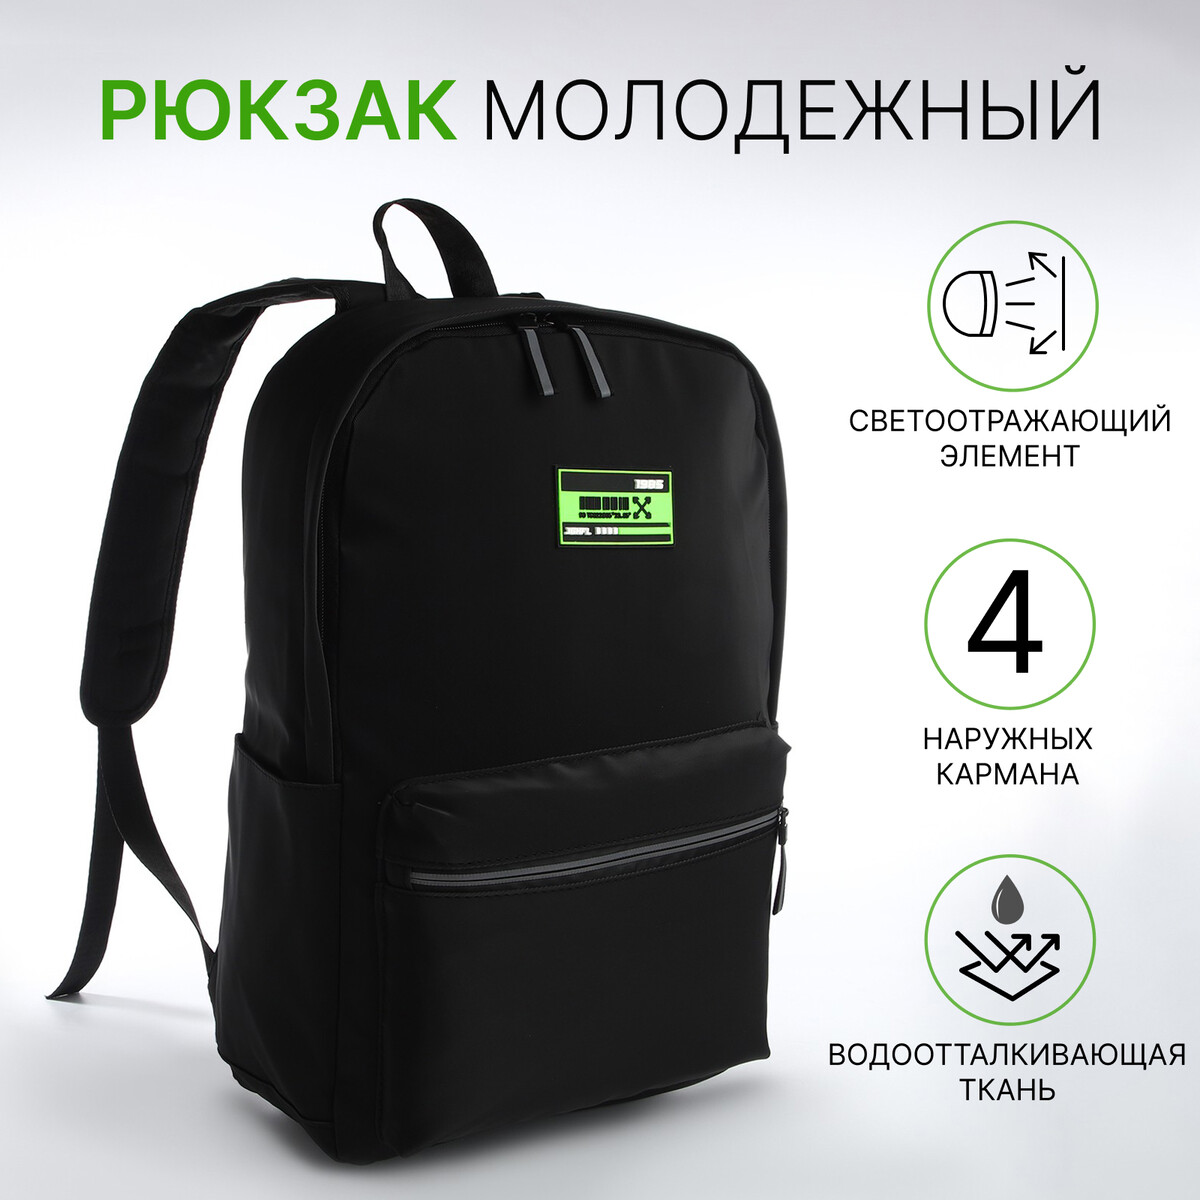 Рюкзак молодежный из текстиля на молнии, 2 кармана, цвет черный/зеленый рюкзак молодежный из текстиля на молнии 2 кармана зеленый